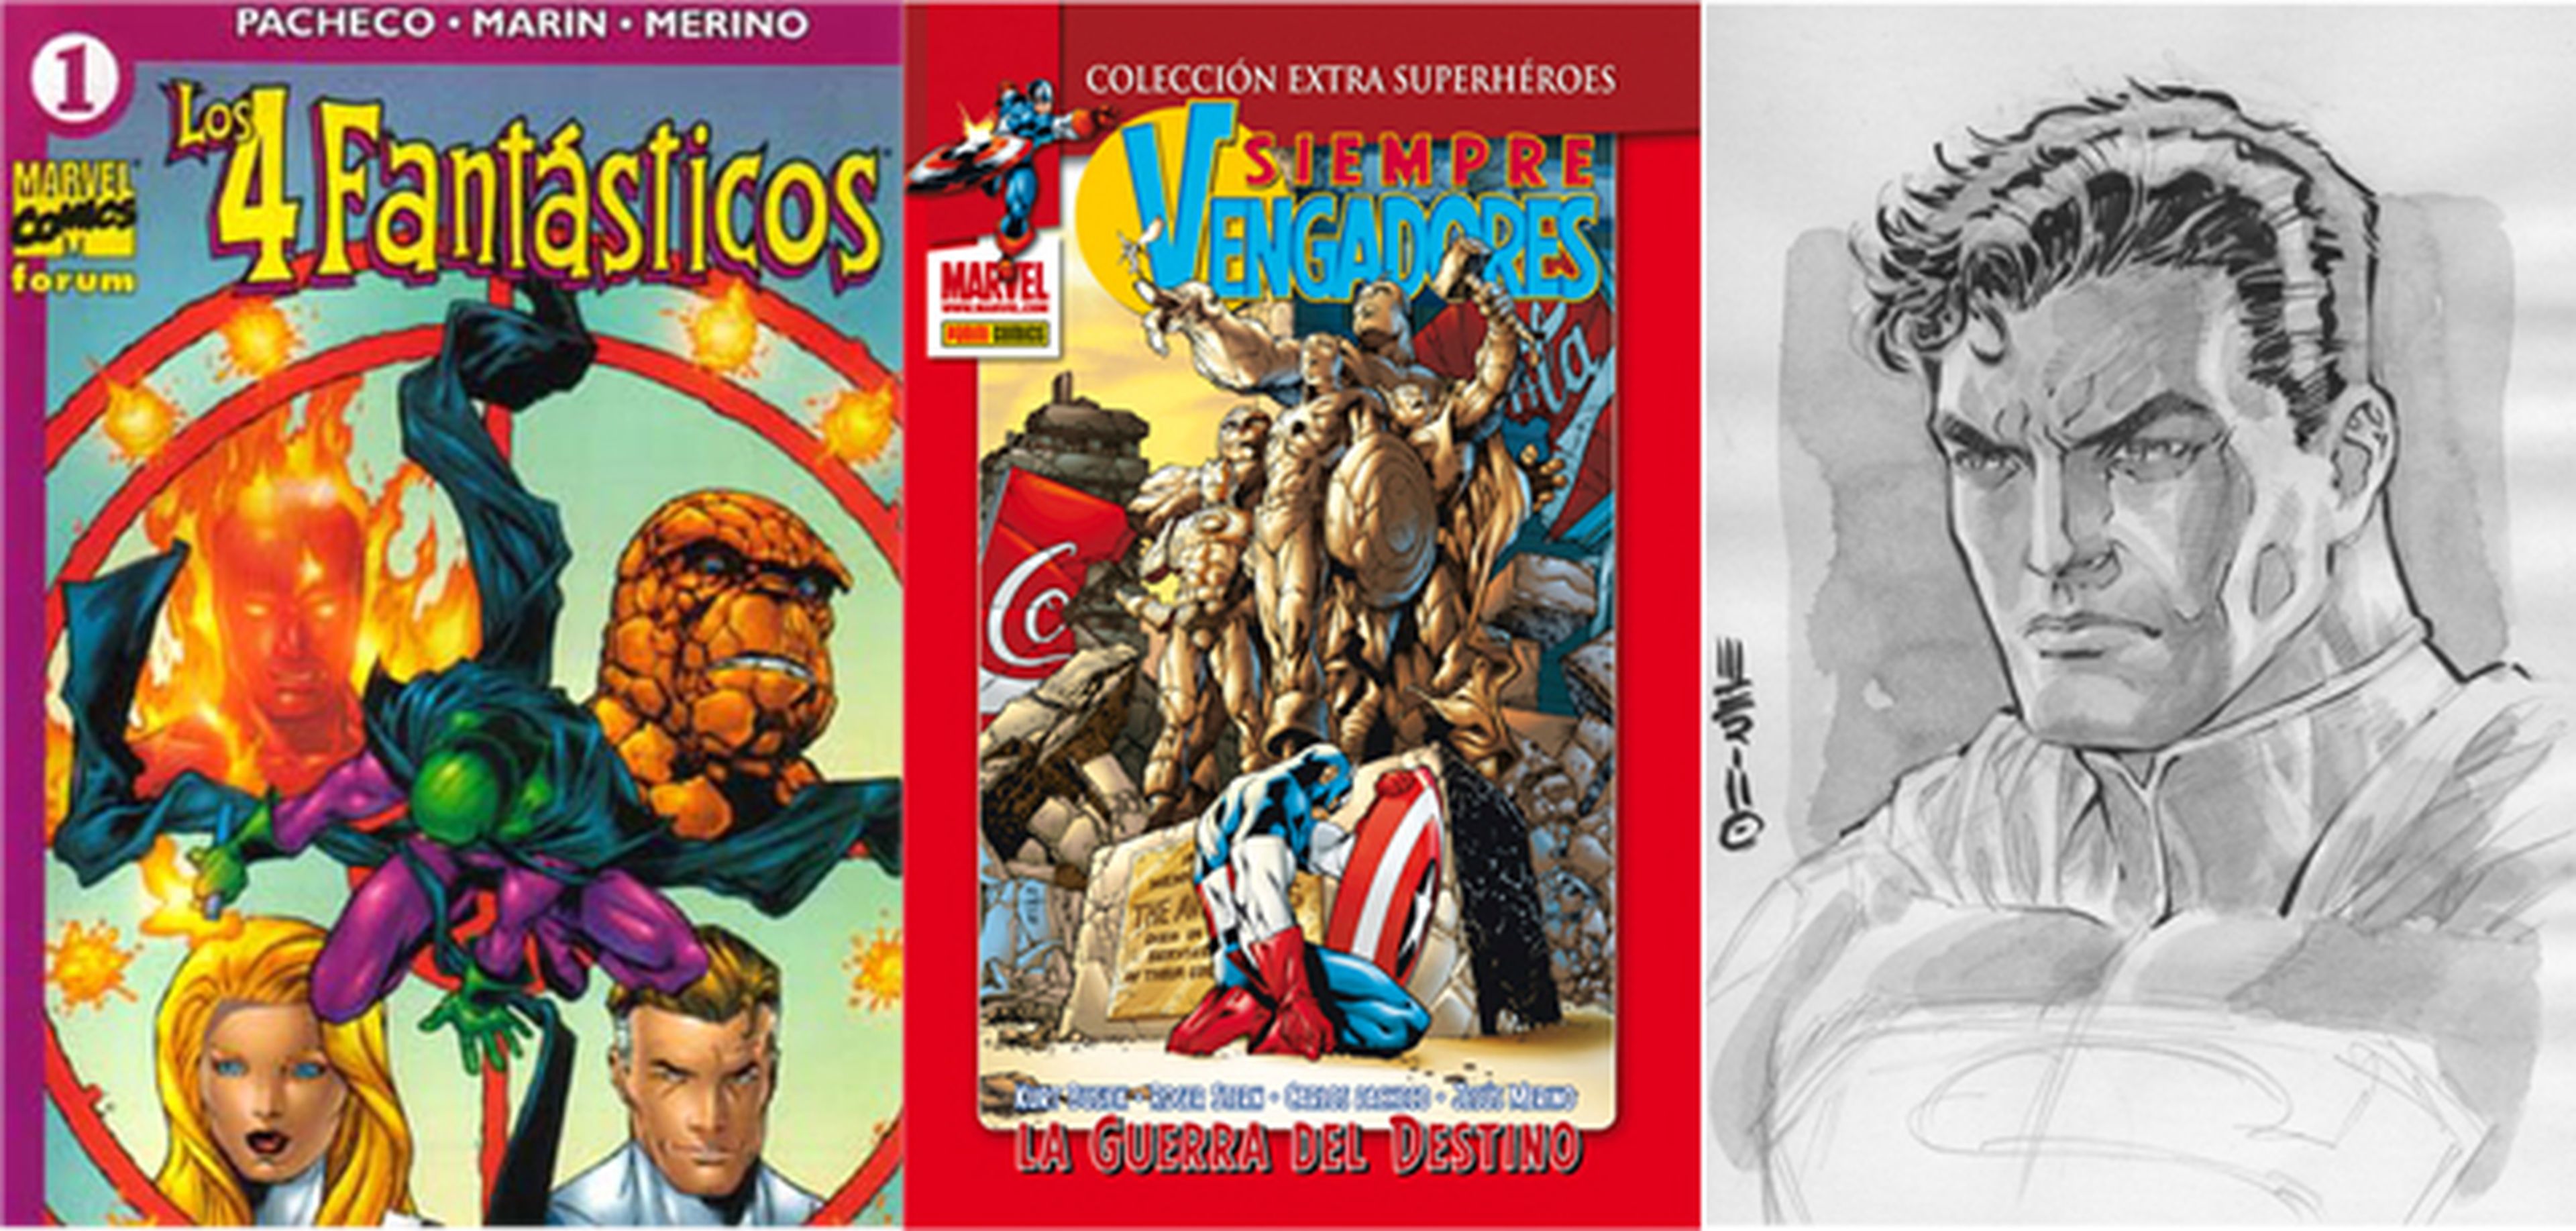 Expocómic 2013: Entrevistamos al mítico dibujante Jesús Merino